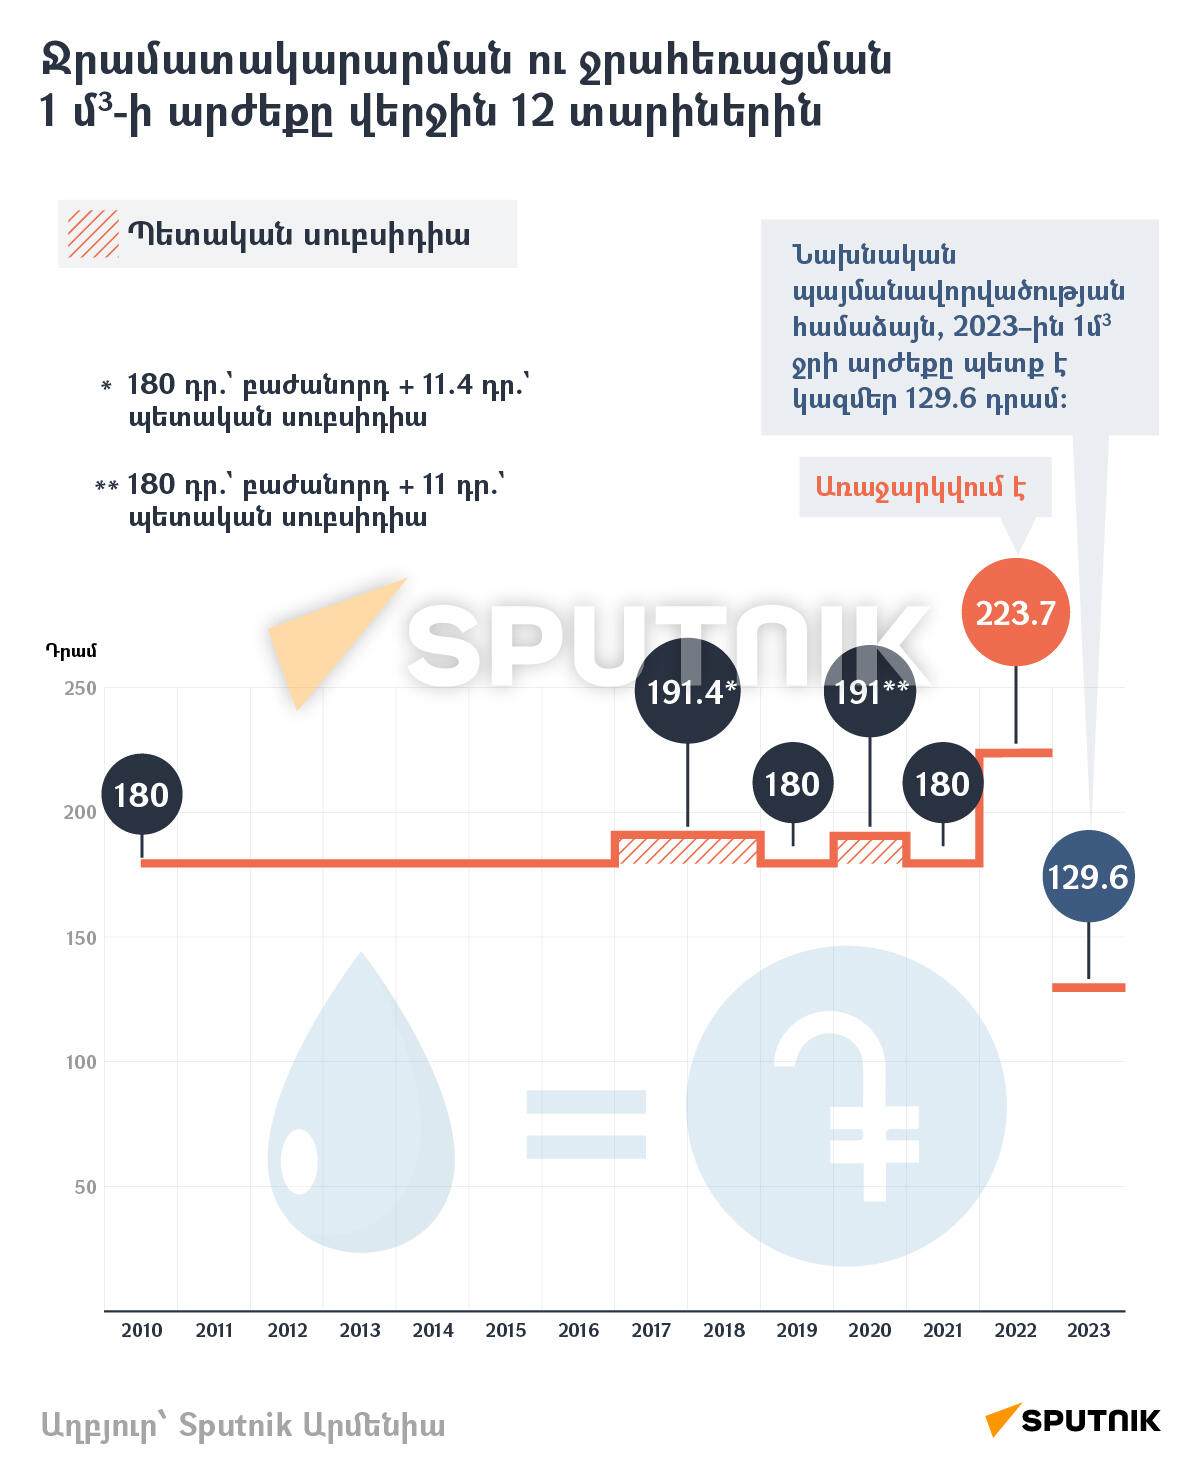 Ջրամատակարարման ու ջրահեռացման 1 մ3-ի արժեքը վերջին 12 տարիներին - Sputnik Արմենիա